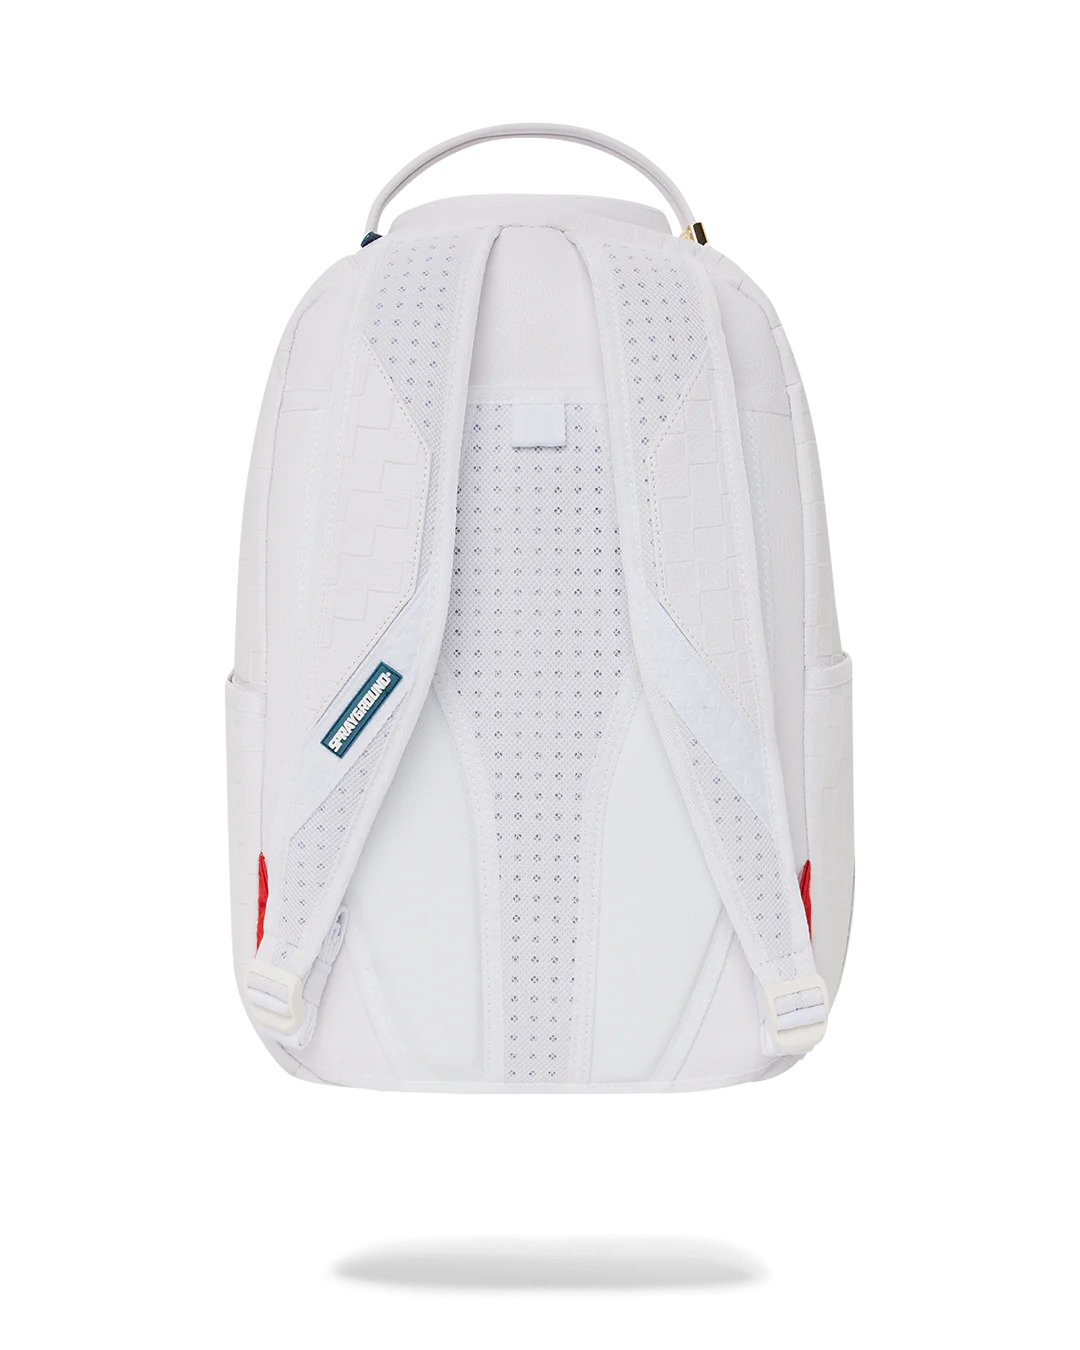 Sprayground Backpack in White for Men